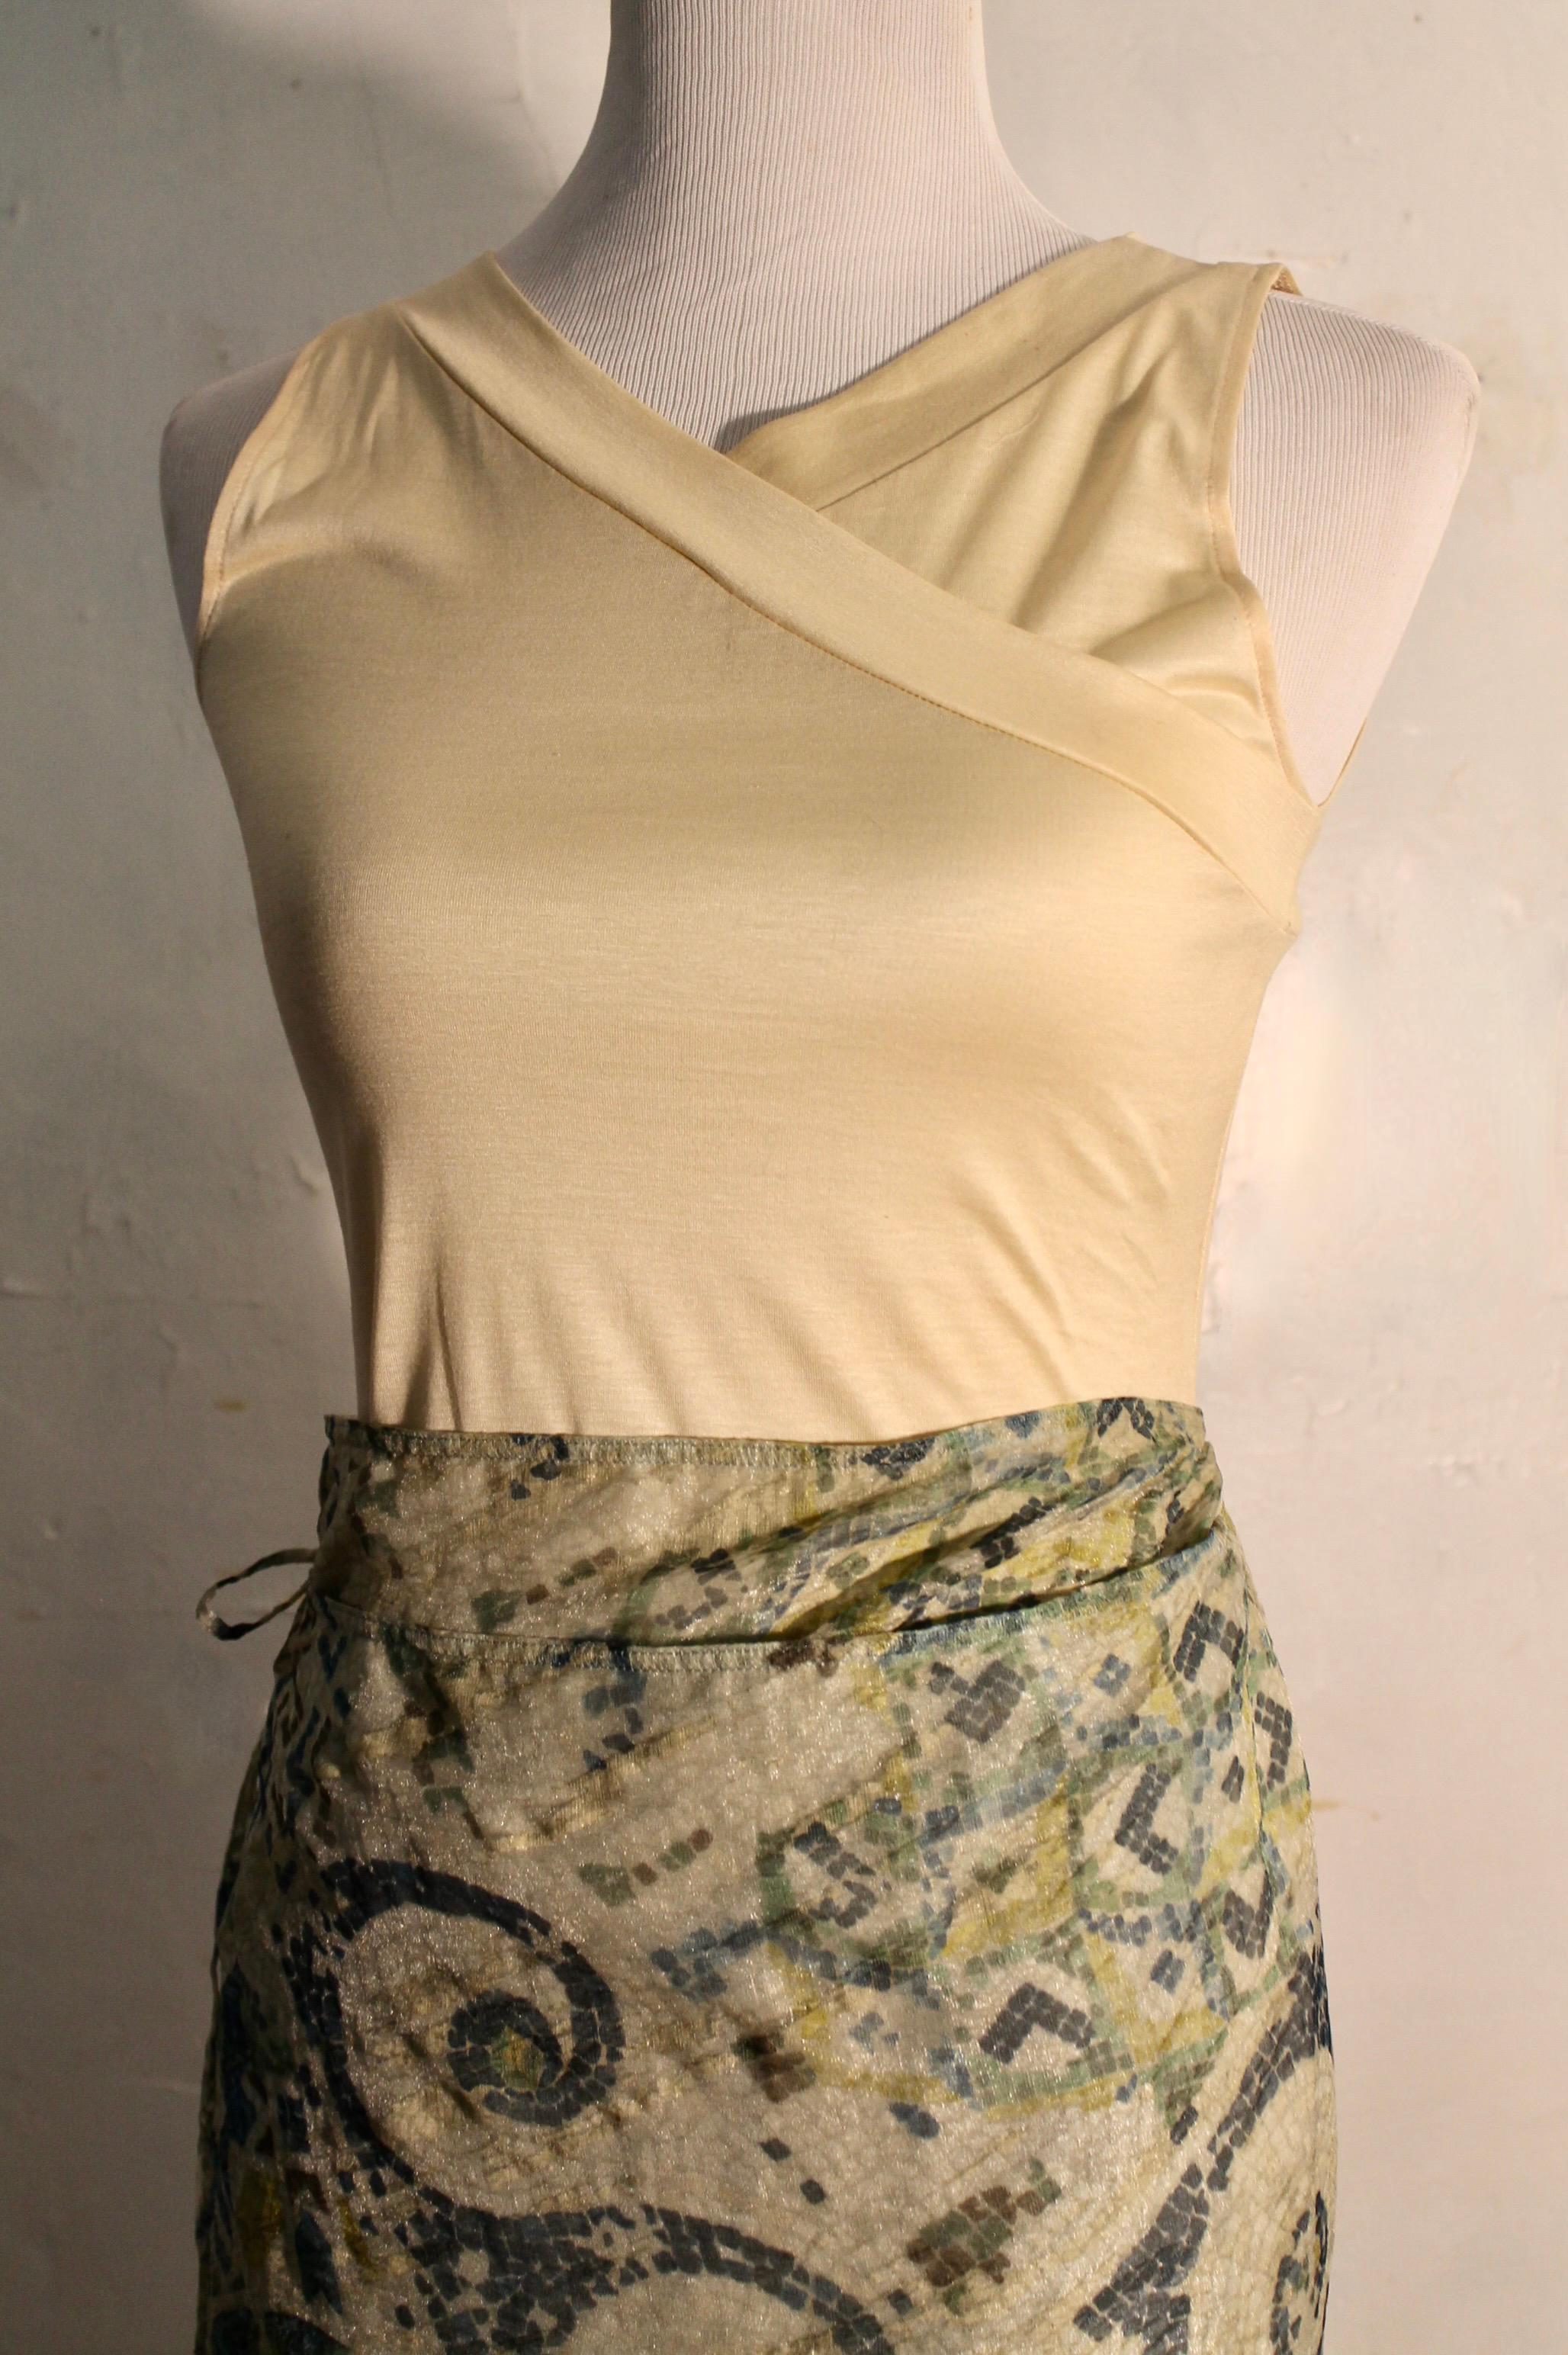 Le devant de la robe se prolonge par un panneau rectangulaire.  À la taille, la jupe devient enveloppante et se noue sur le côté. La doublure de la jupe est en coton. 